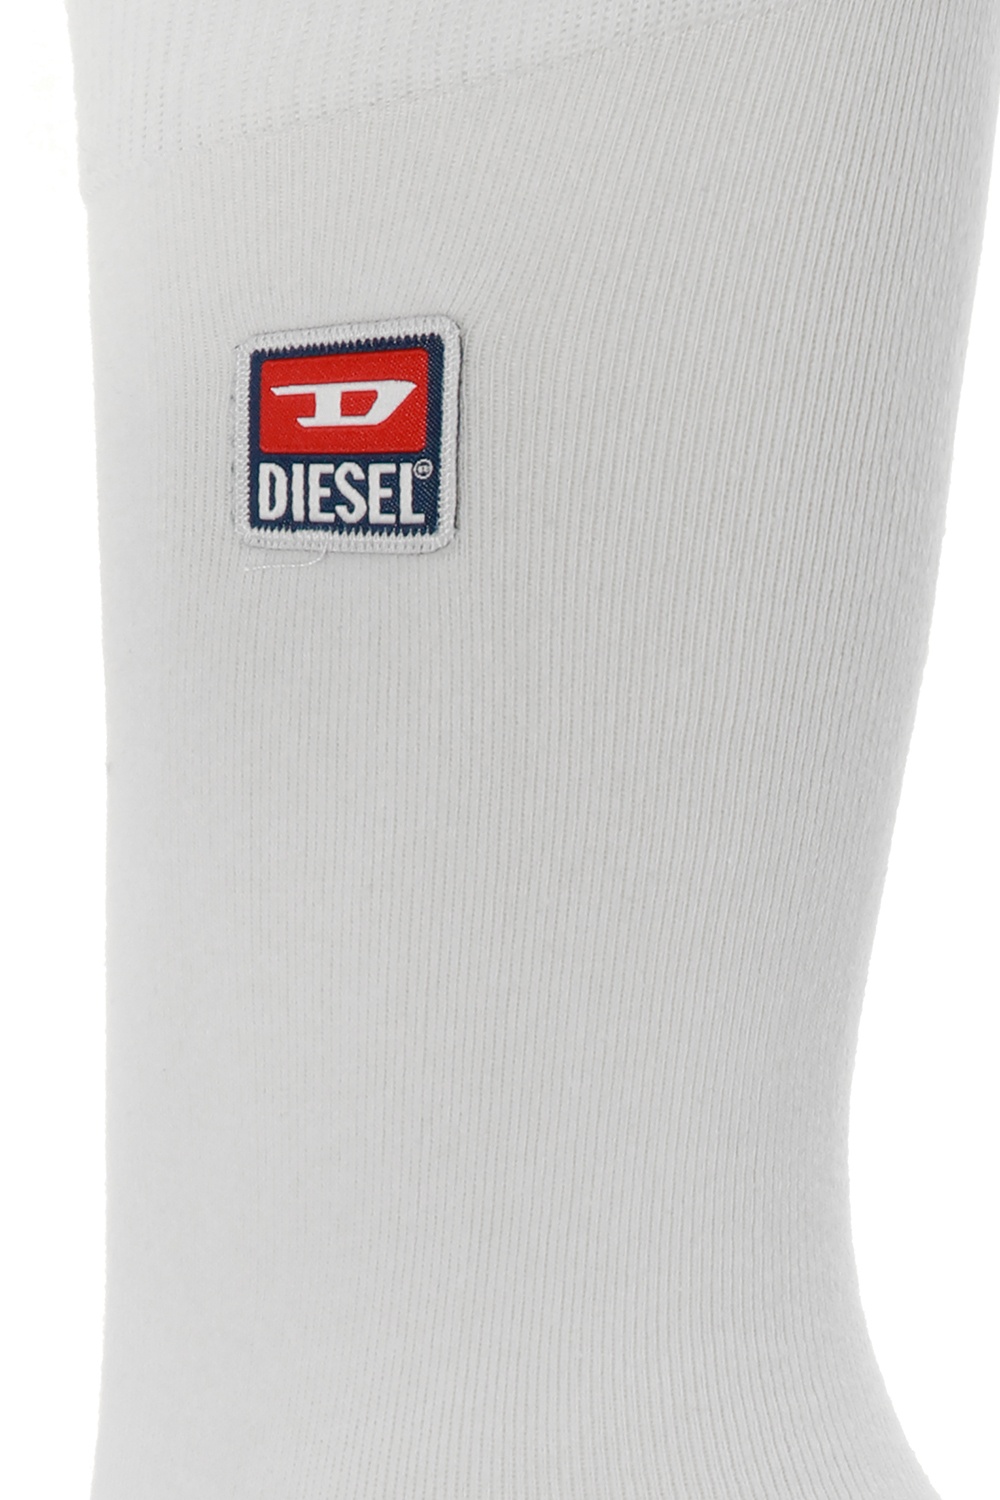 Diesel Socks 3-pack